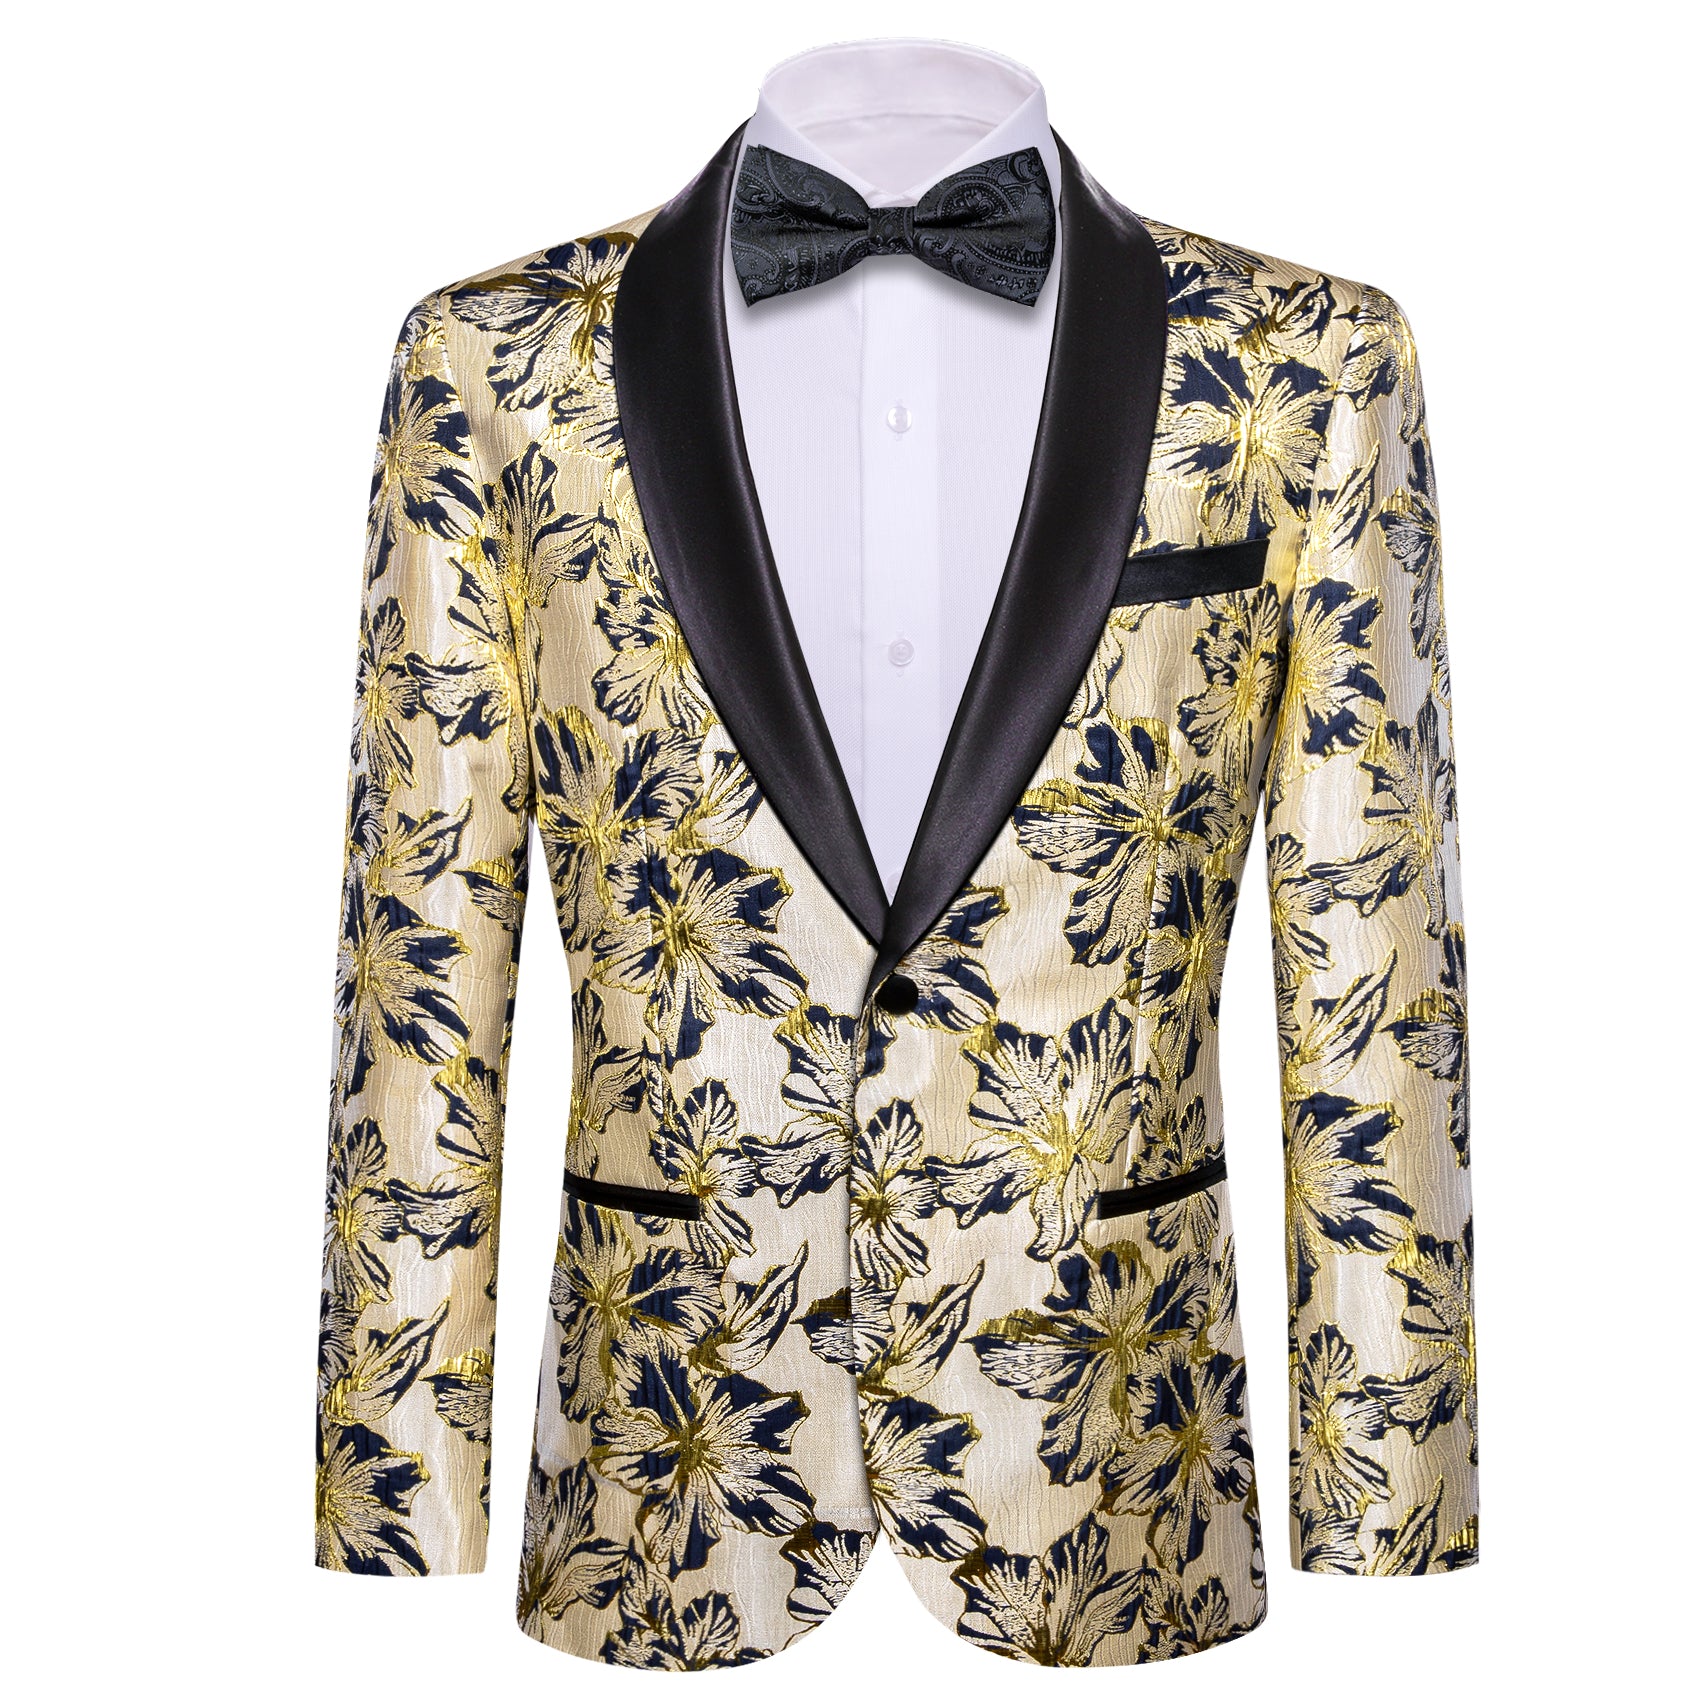 Barry.wang Shawl Collar Suit Black Gold Floral Men's Suit Jacket